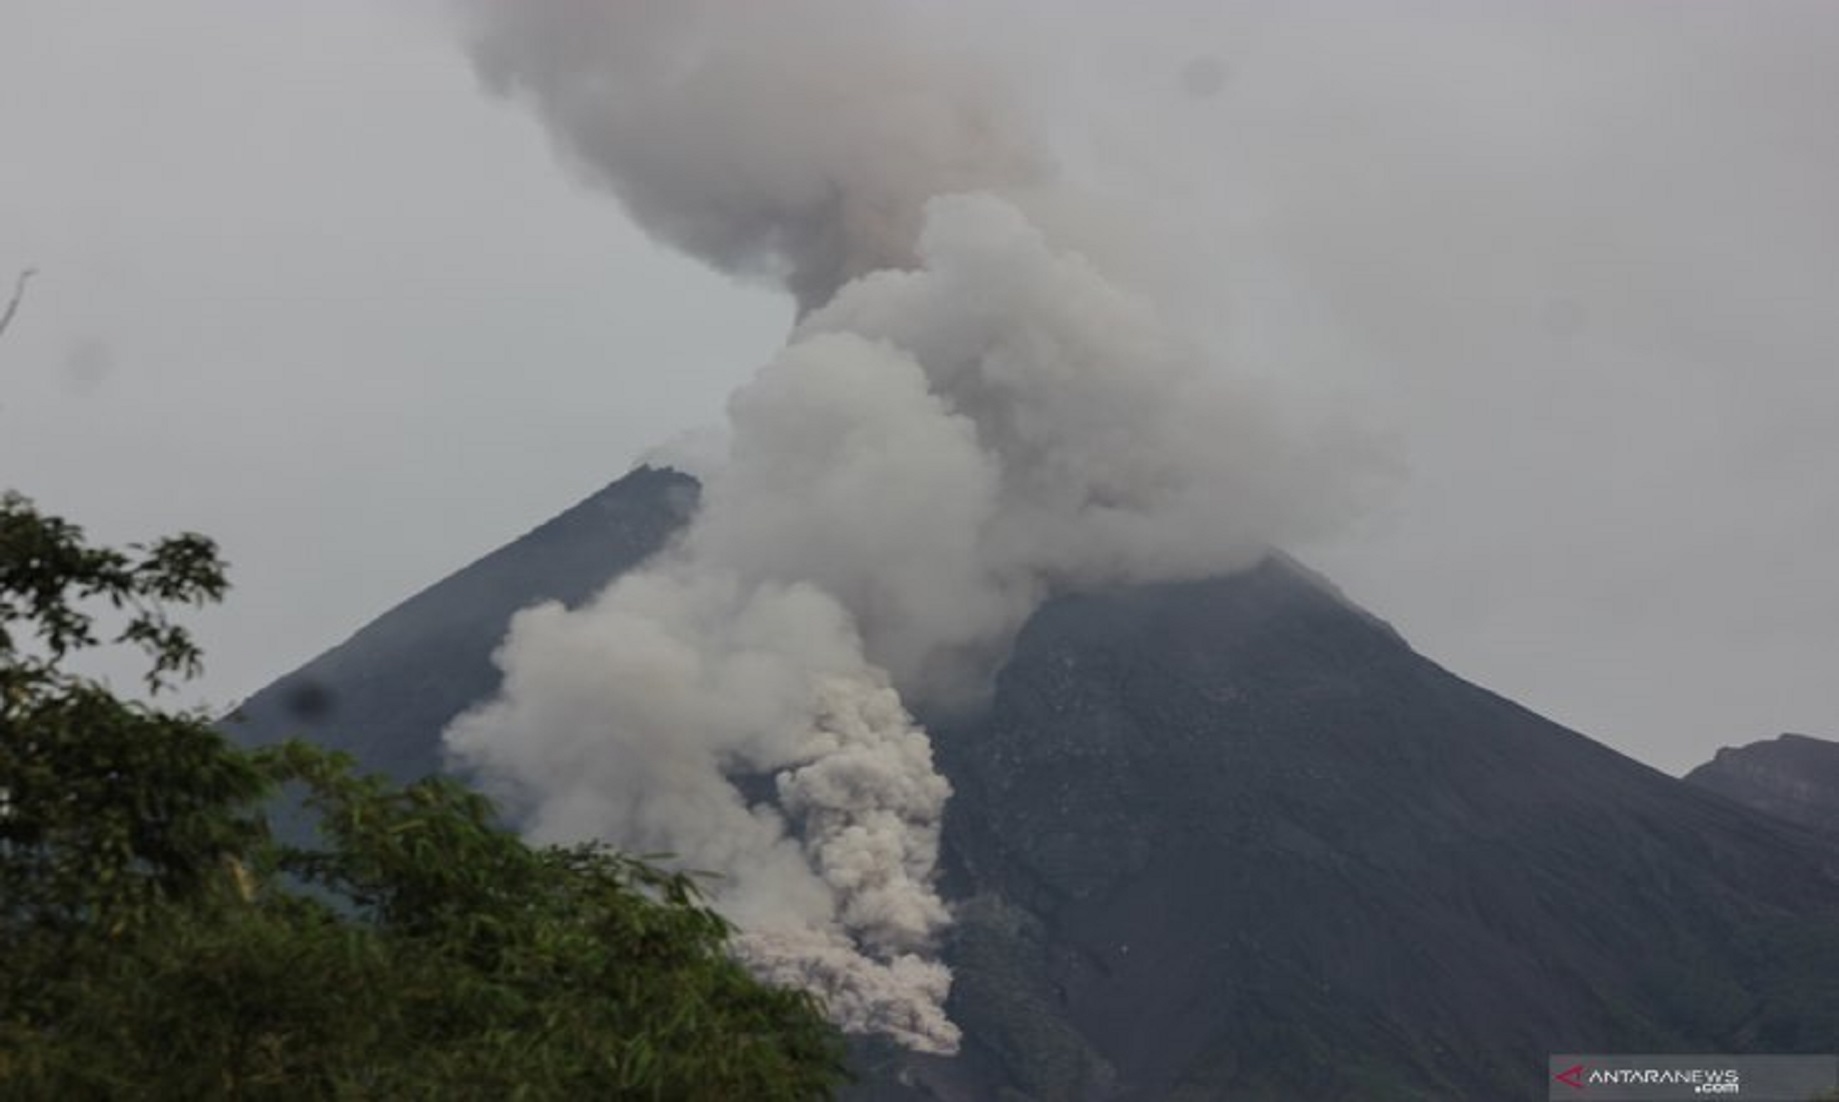 Indonesia’s Mount Merapi erupts, top flight alert issued